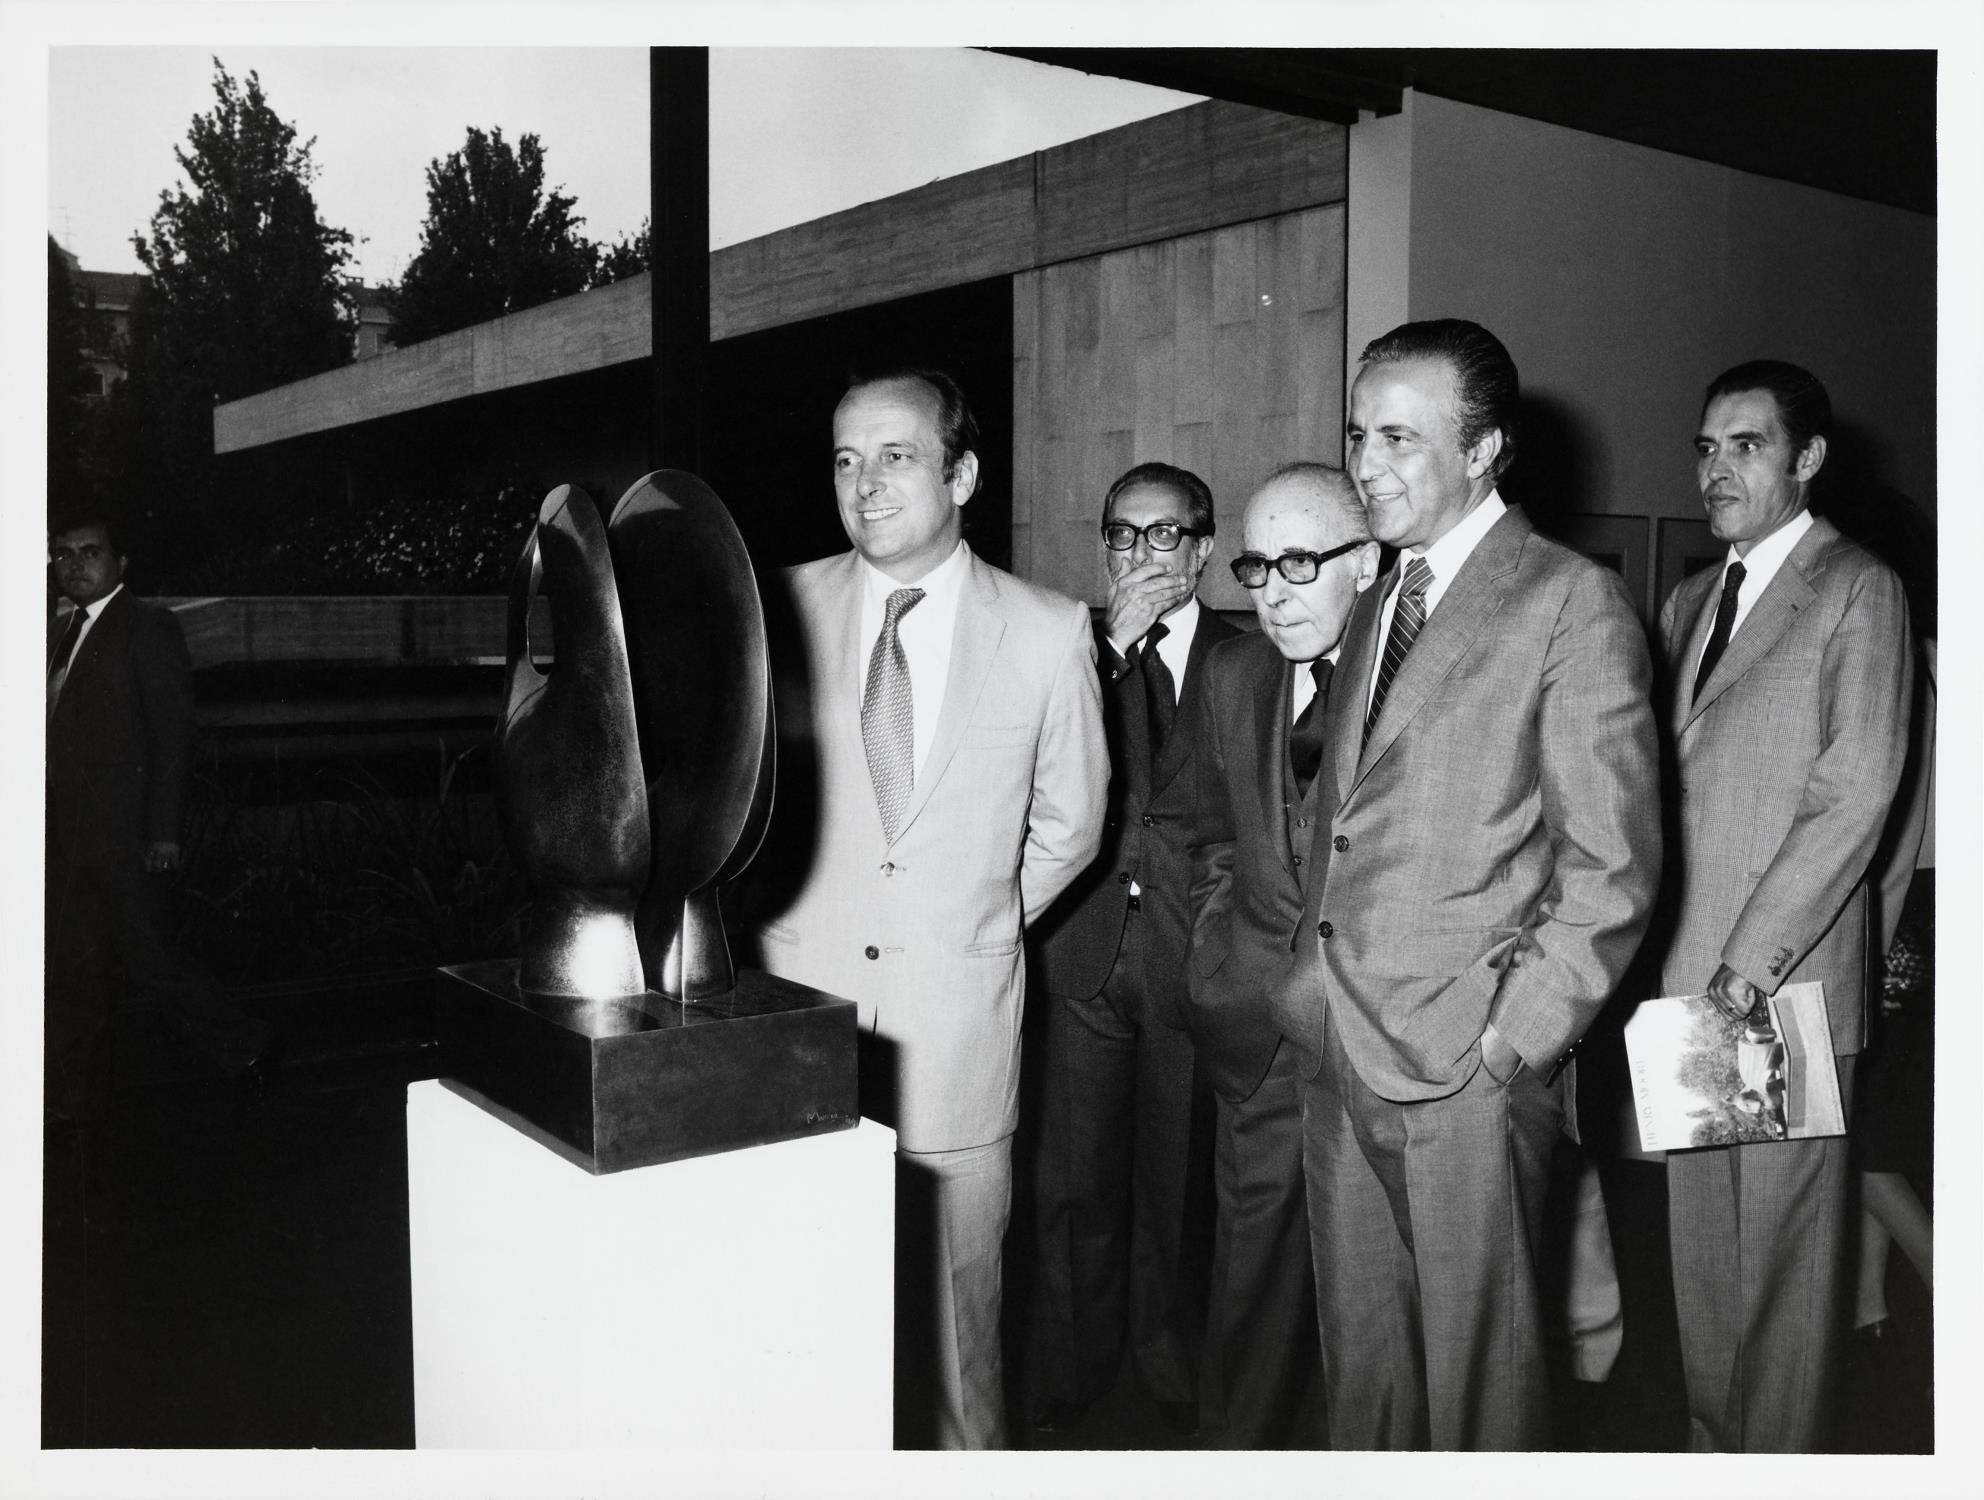 Visita oficial. Francisco Pinto Balsemão, Primeiro-ministro de Portugal, (à esq.), António Ferrer Correia e Victor Sá Machado (ao centro), Pedro Tamen (atrás, ao centro) e José Blanco (atrás, à dir.)